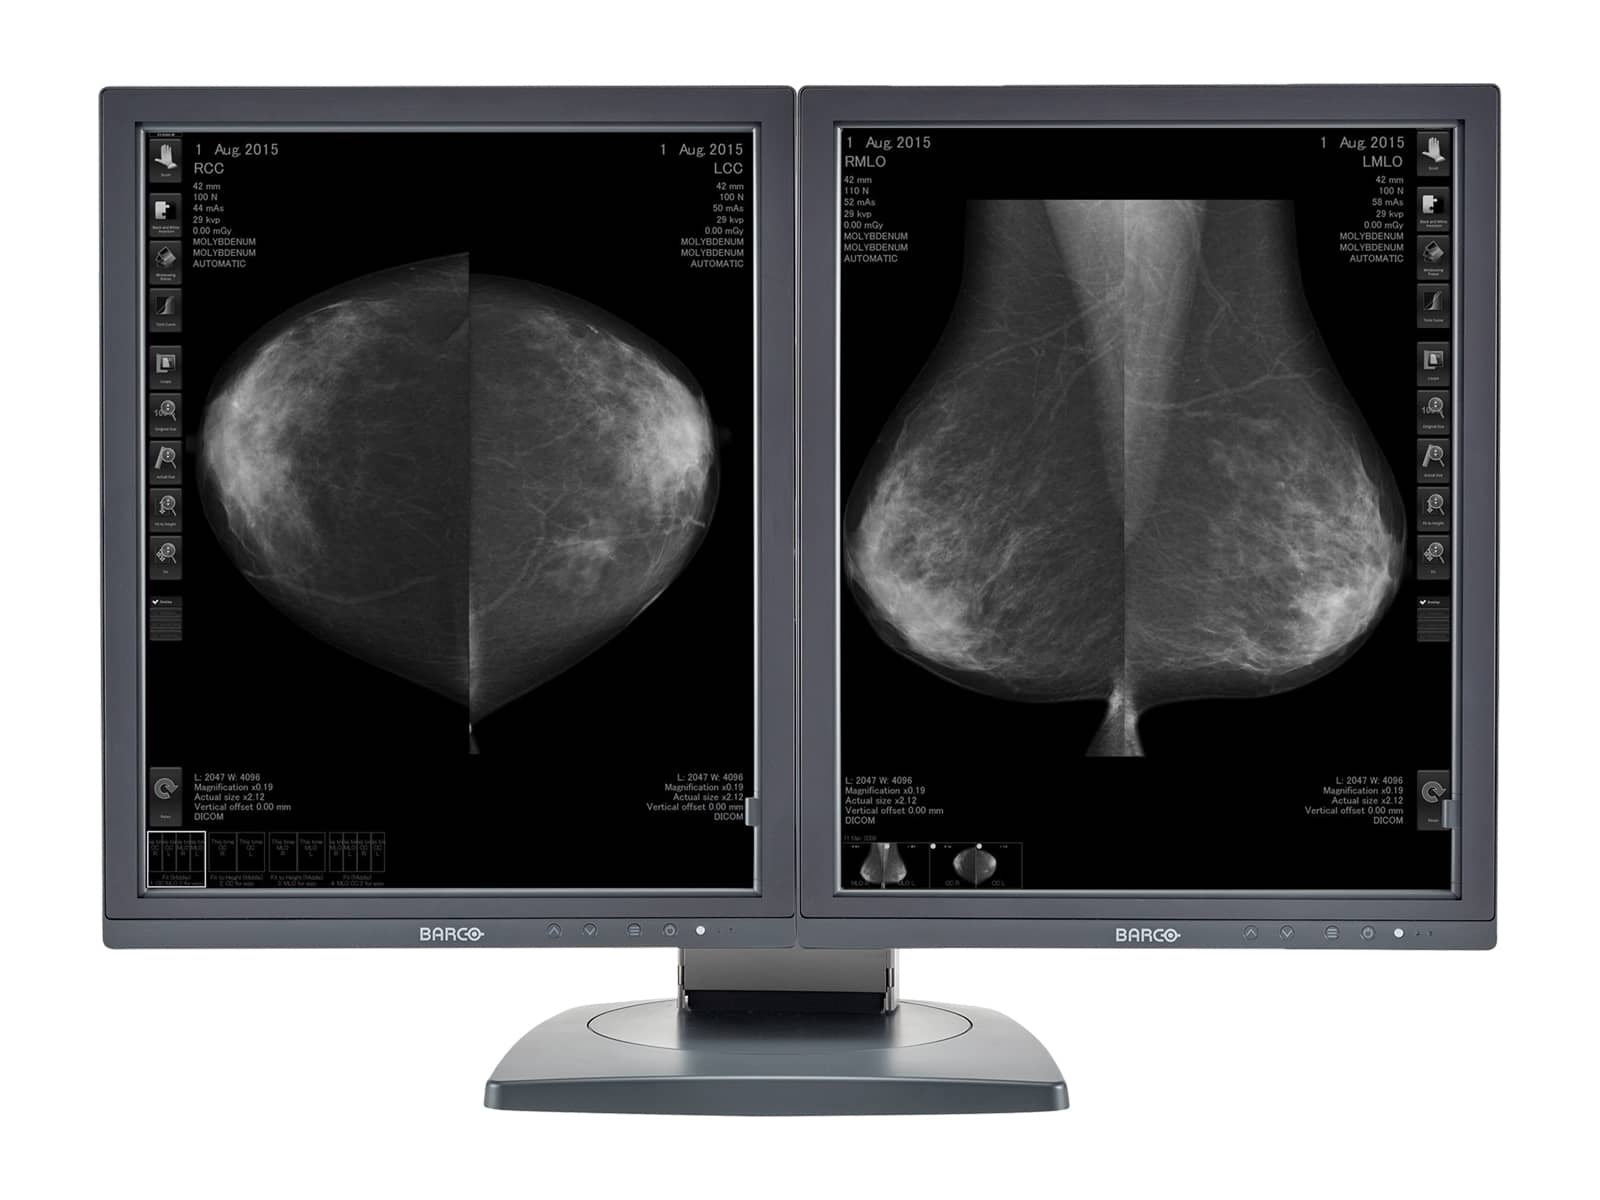 Barco Écran d'imagerie mammaire Coronis MDCG-5121 21" en niveaux de gris Mammo 3D-DBT (K9601738) Monitors.com